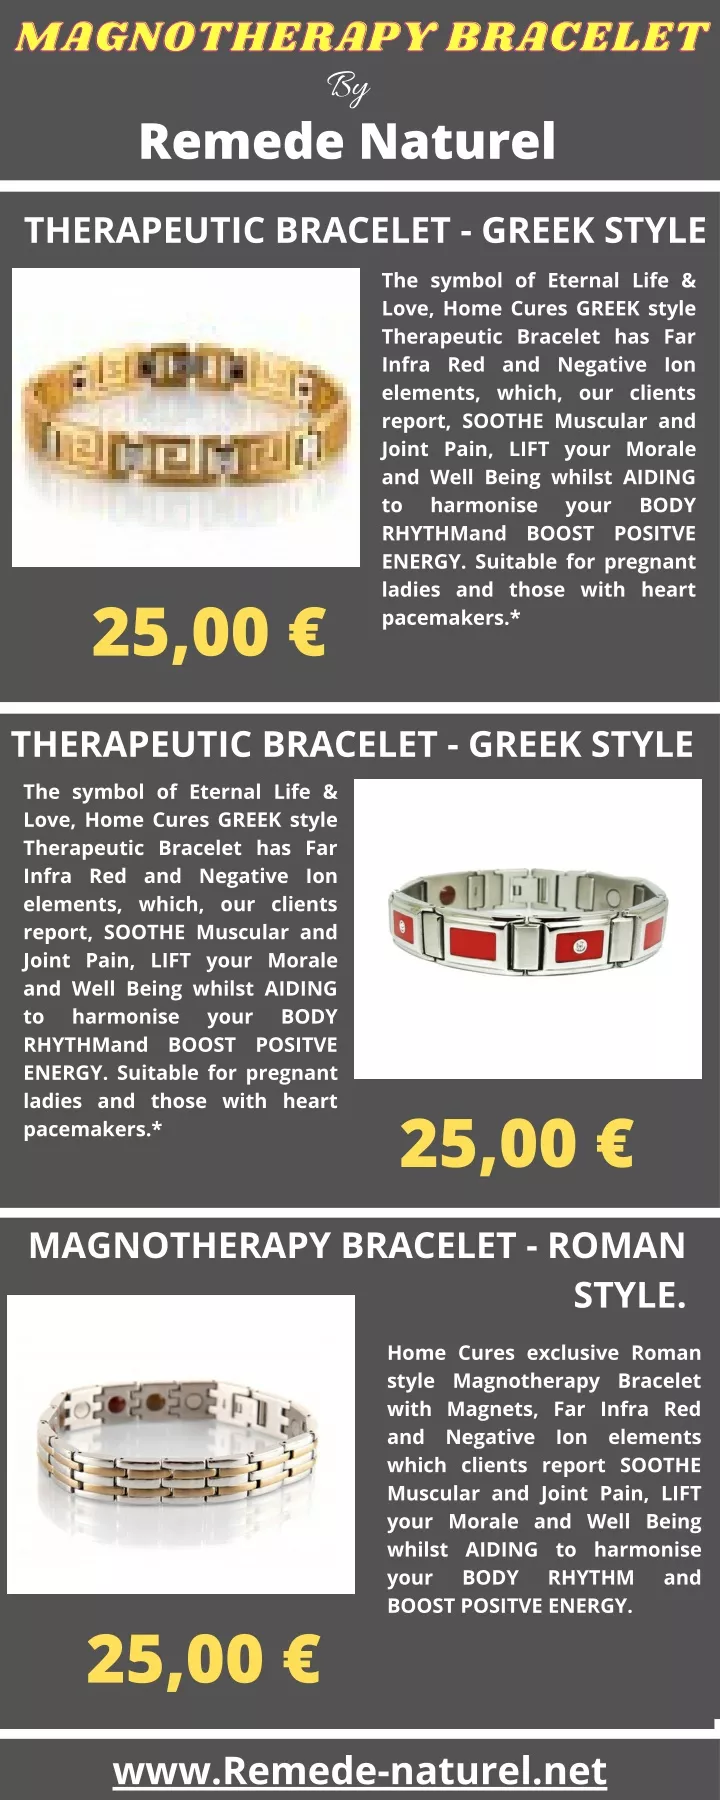 magnotherapy bracelet magnotherapy bracelet